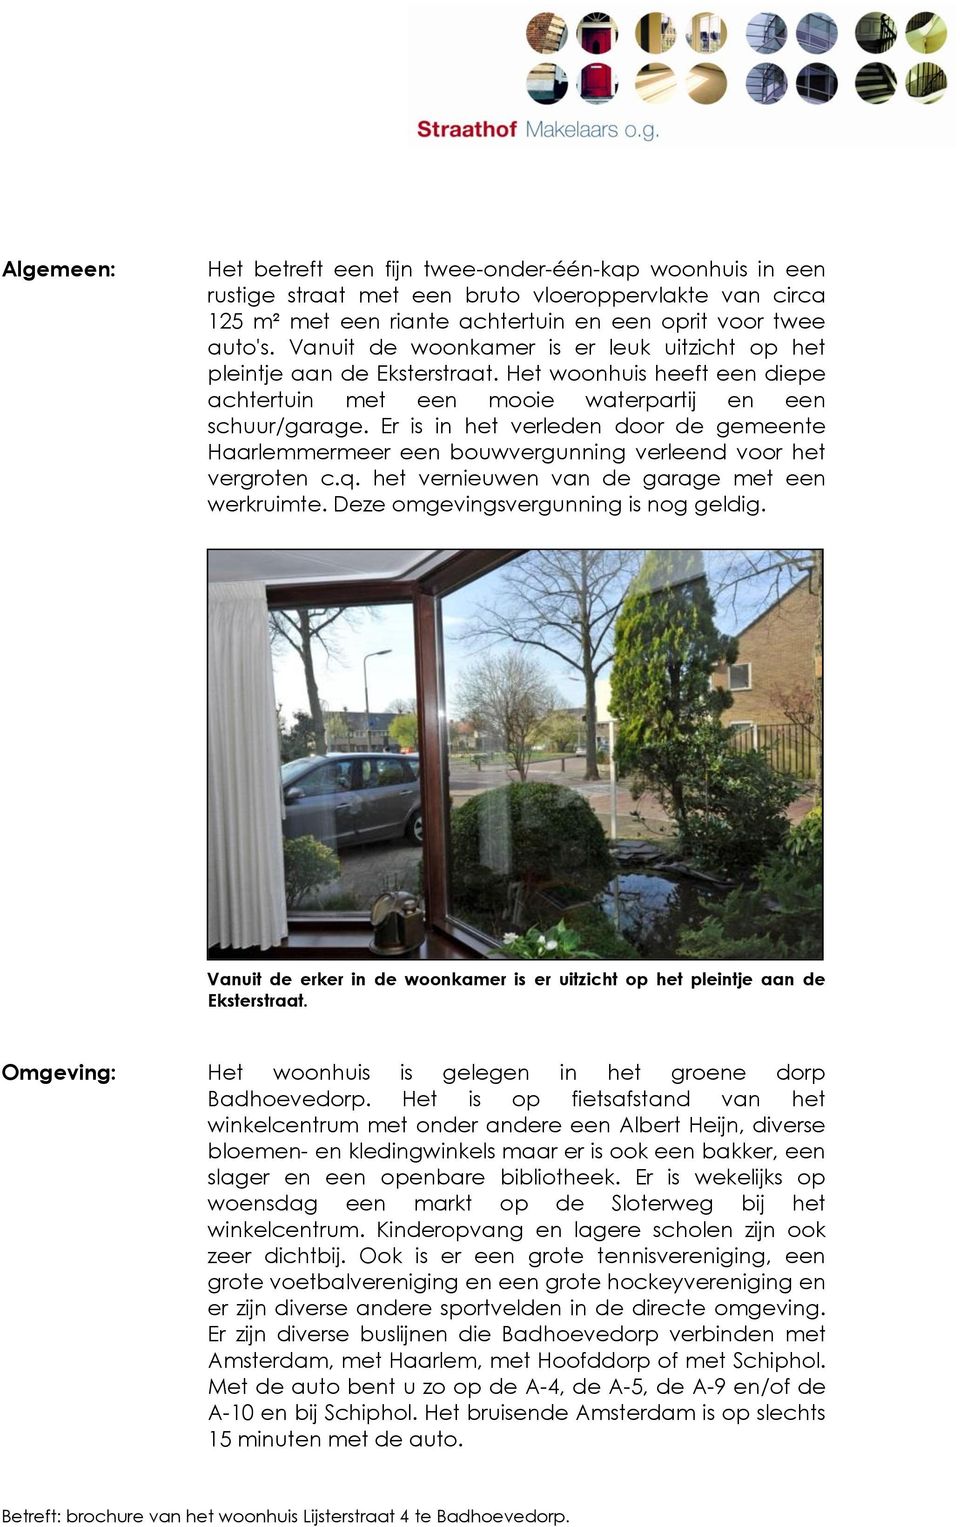 Er is in het verleden door de gemeente Haarlemmermeer een bouwvergunning verleend voor het vergroten c.q. het vernieuwen van de garage met een werkruimte. Deze omgevingsvergunning is nog geldig.